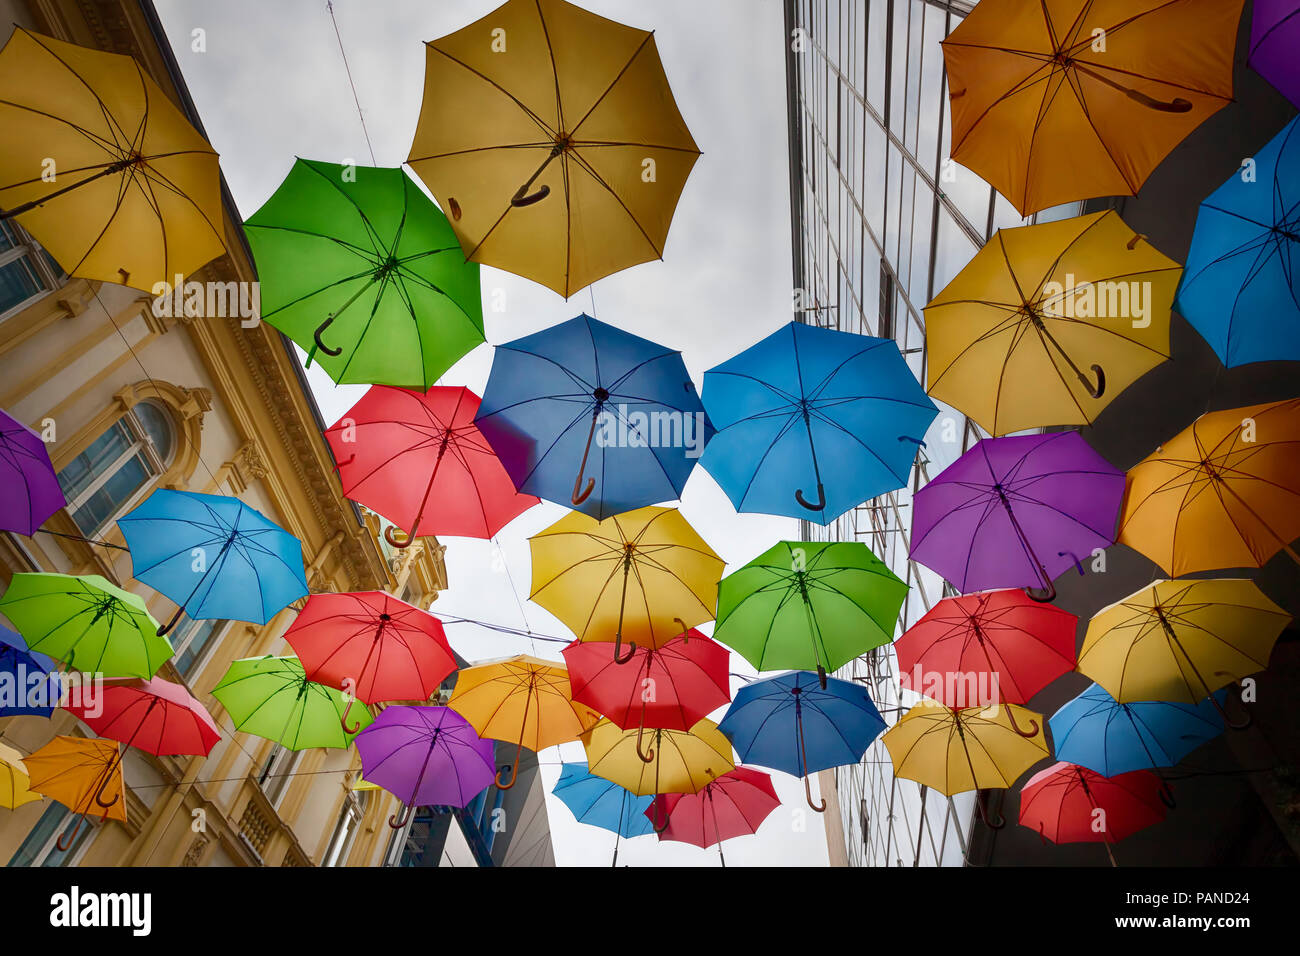 Colorful umbrellas in the sky - Belgrade city centre, Serbia Stock Photo